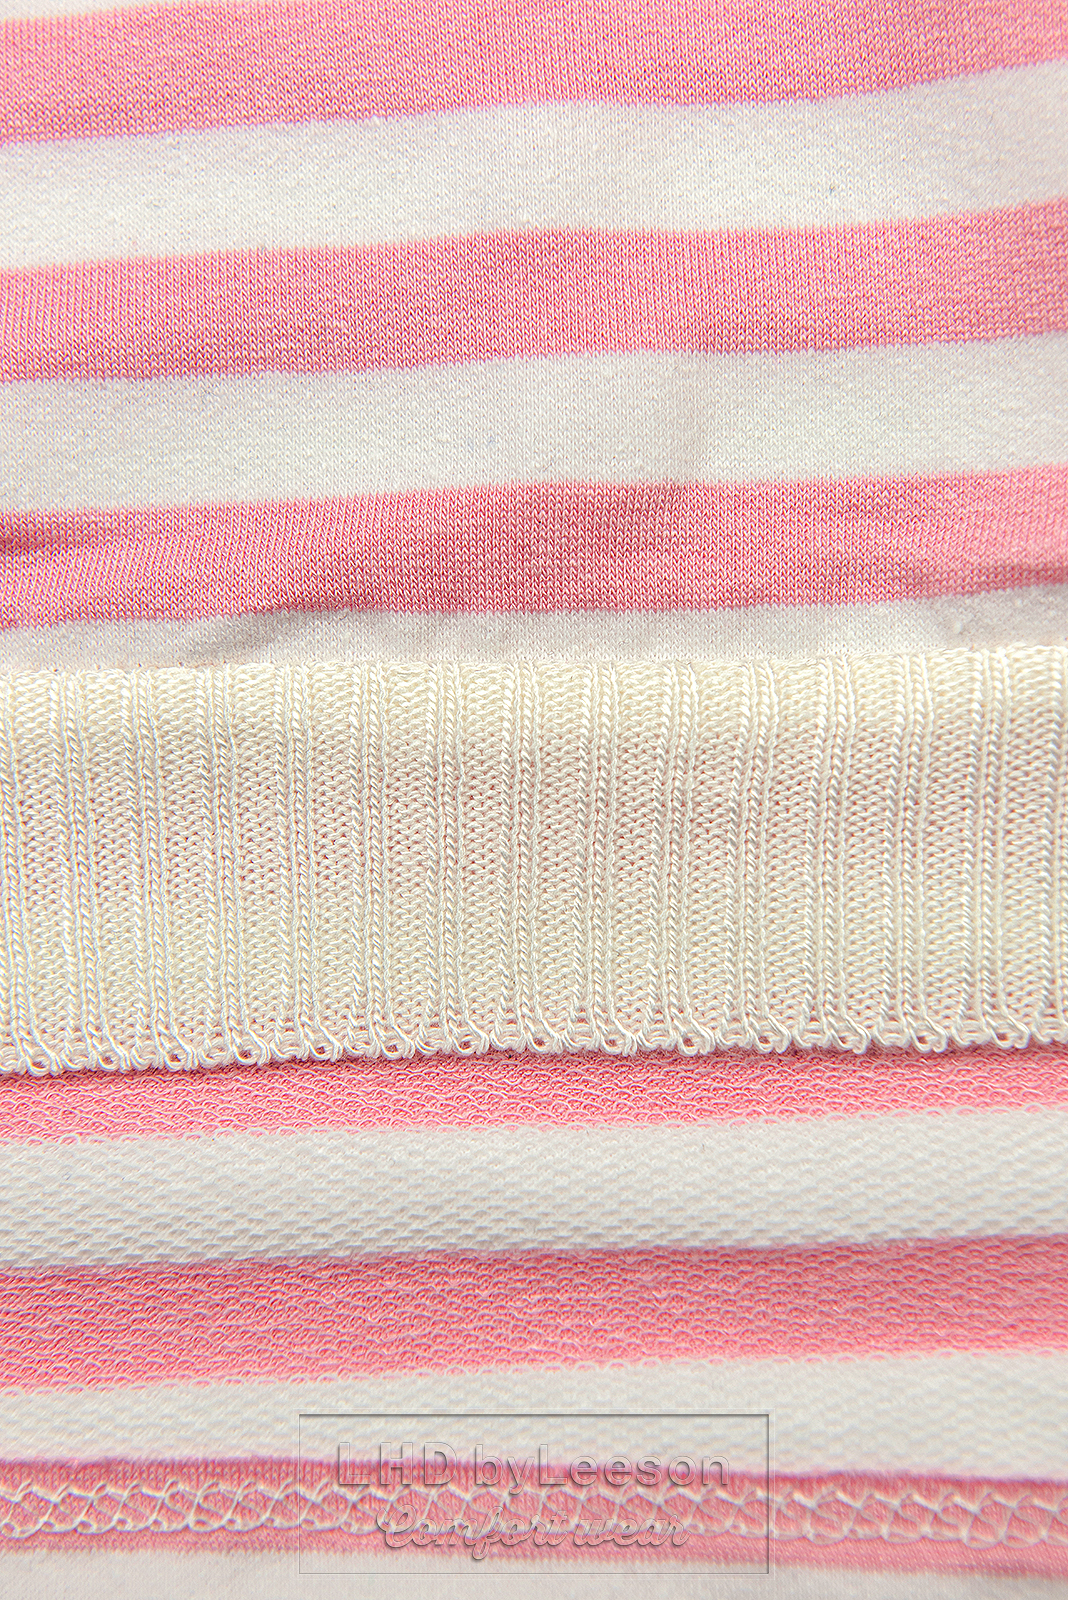 Prążkowana bluzka różowa/biała